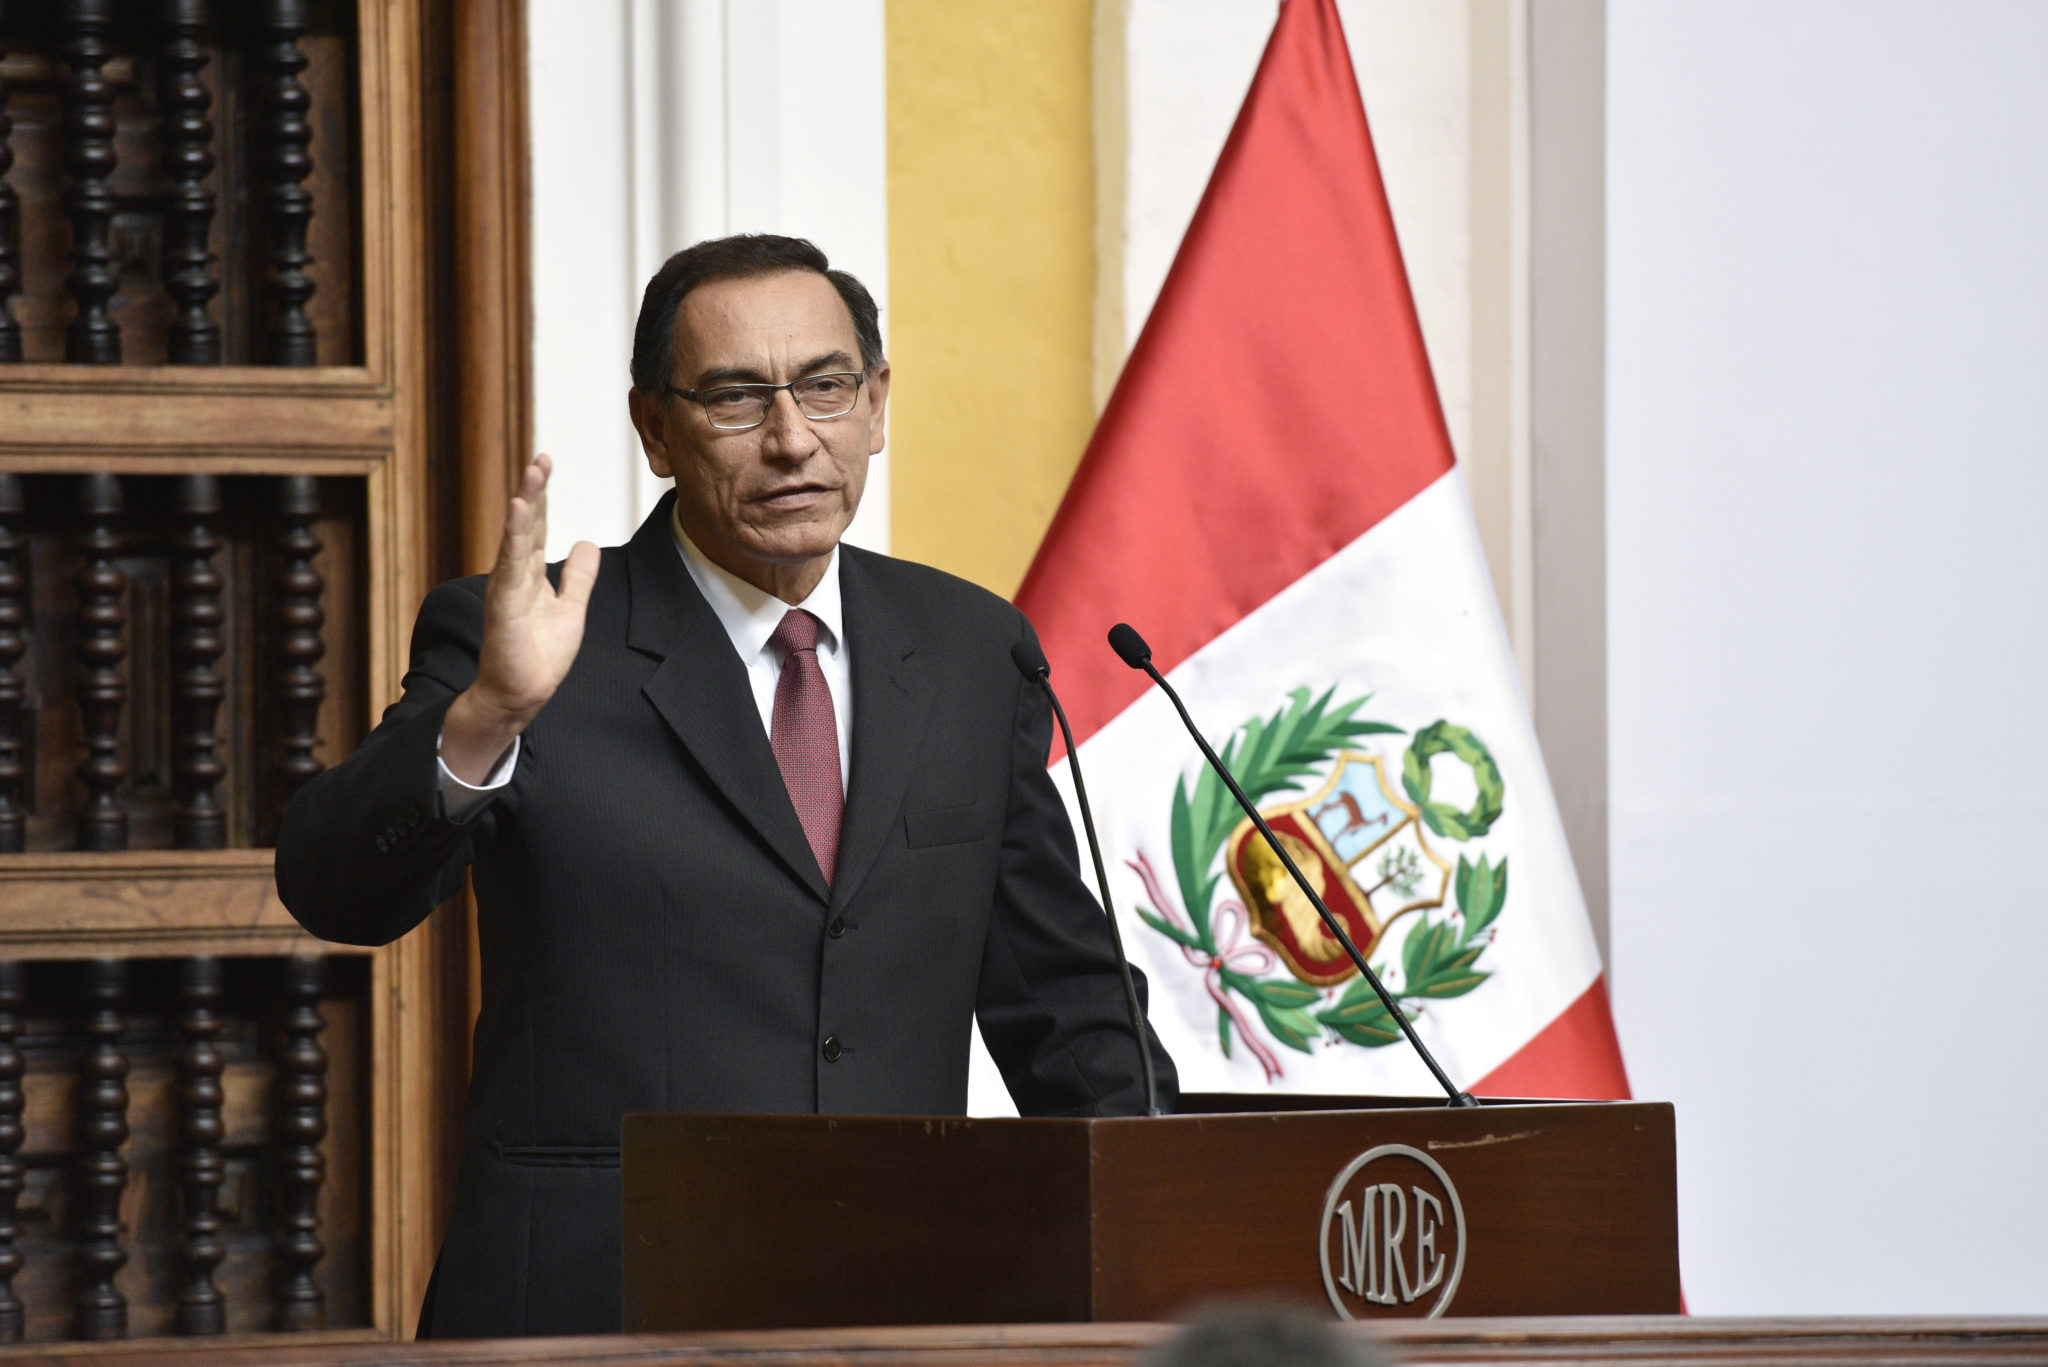 Martin Vizcarra President of Peru